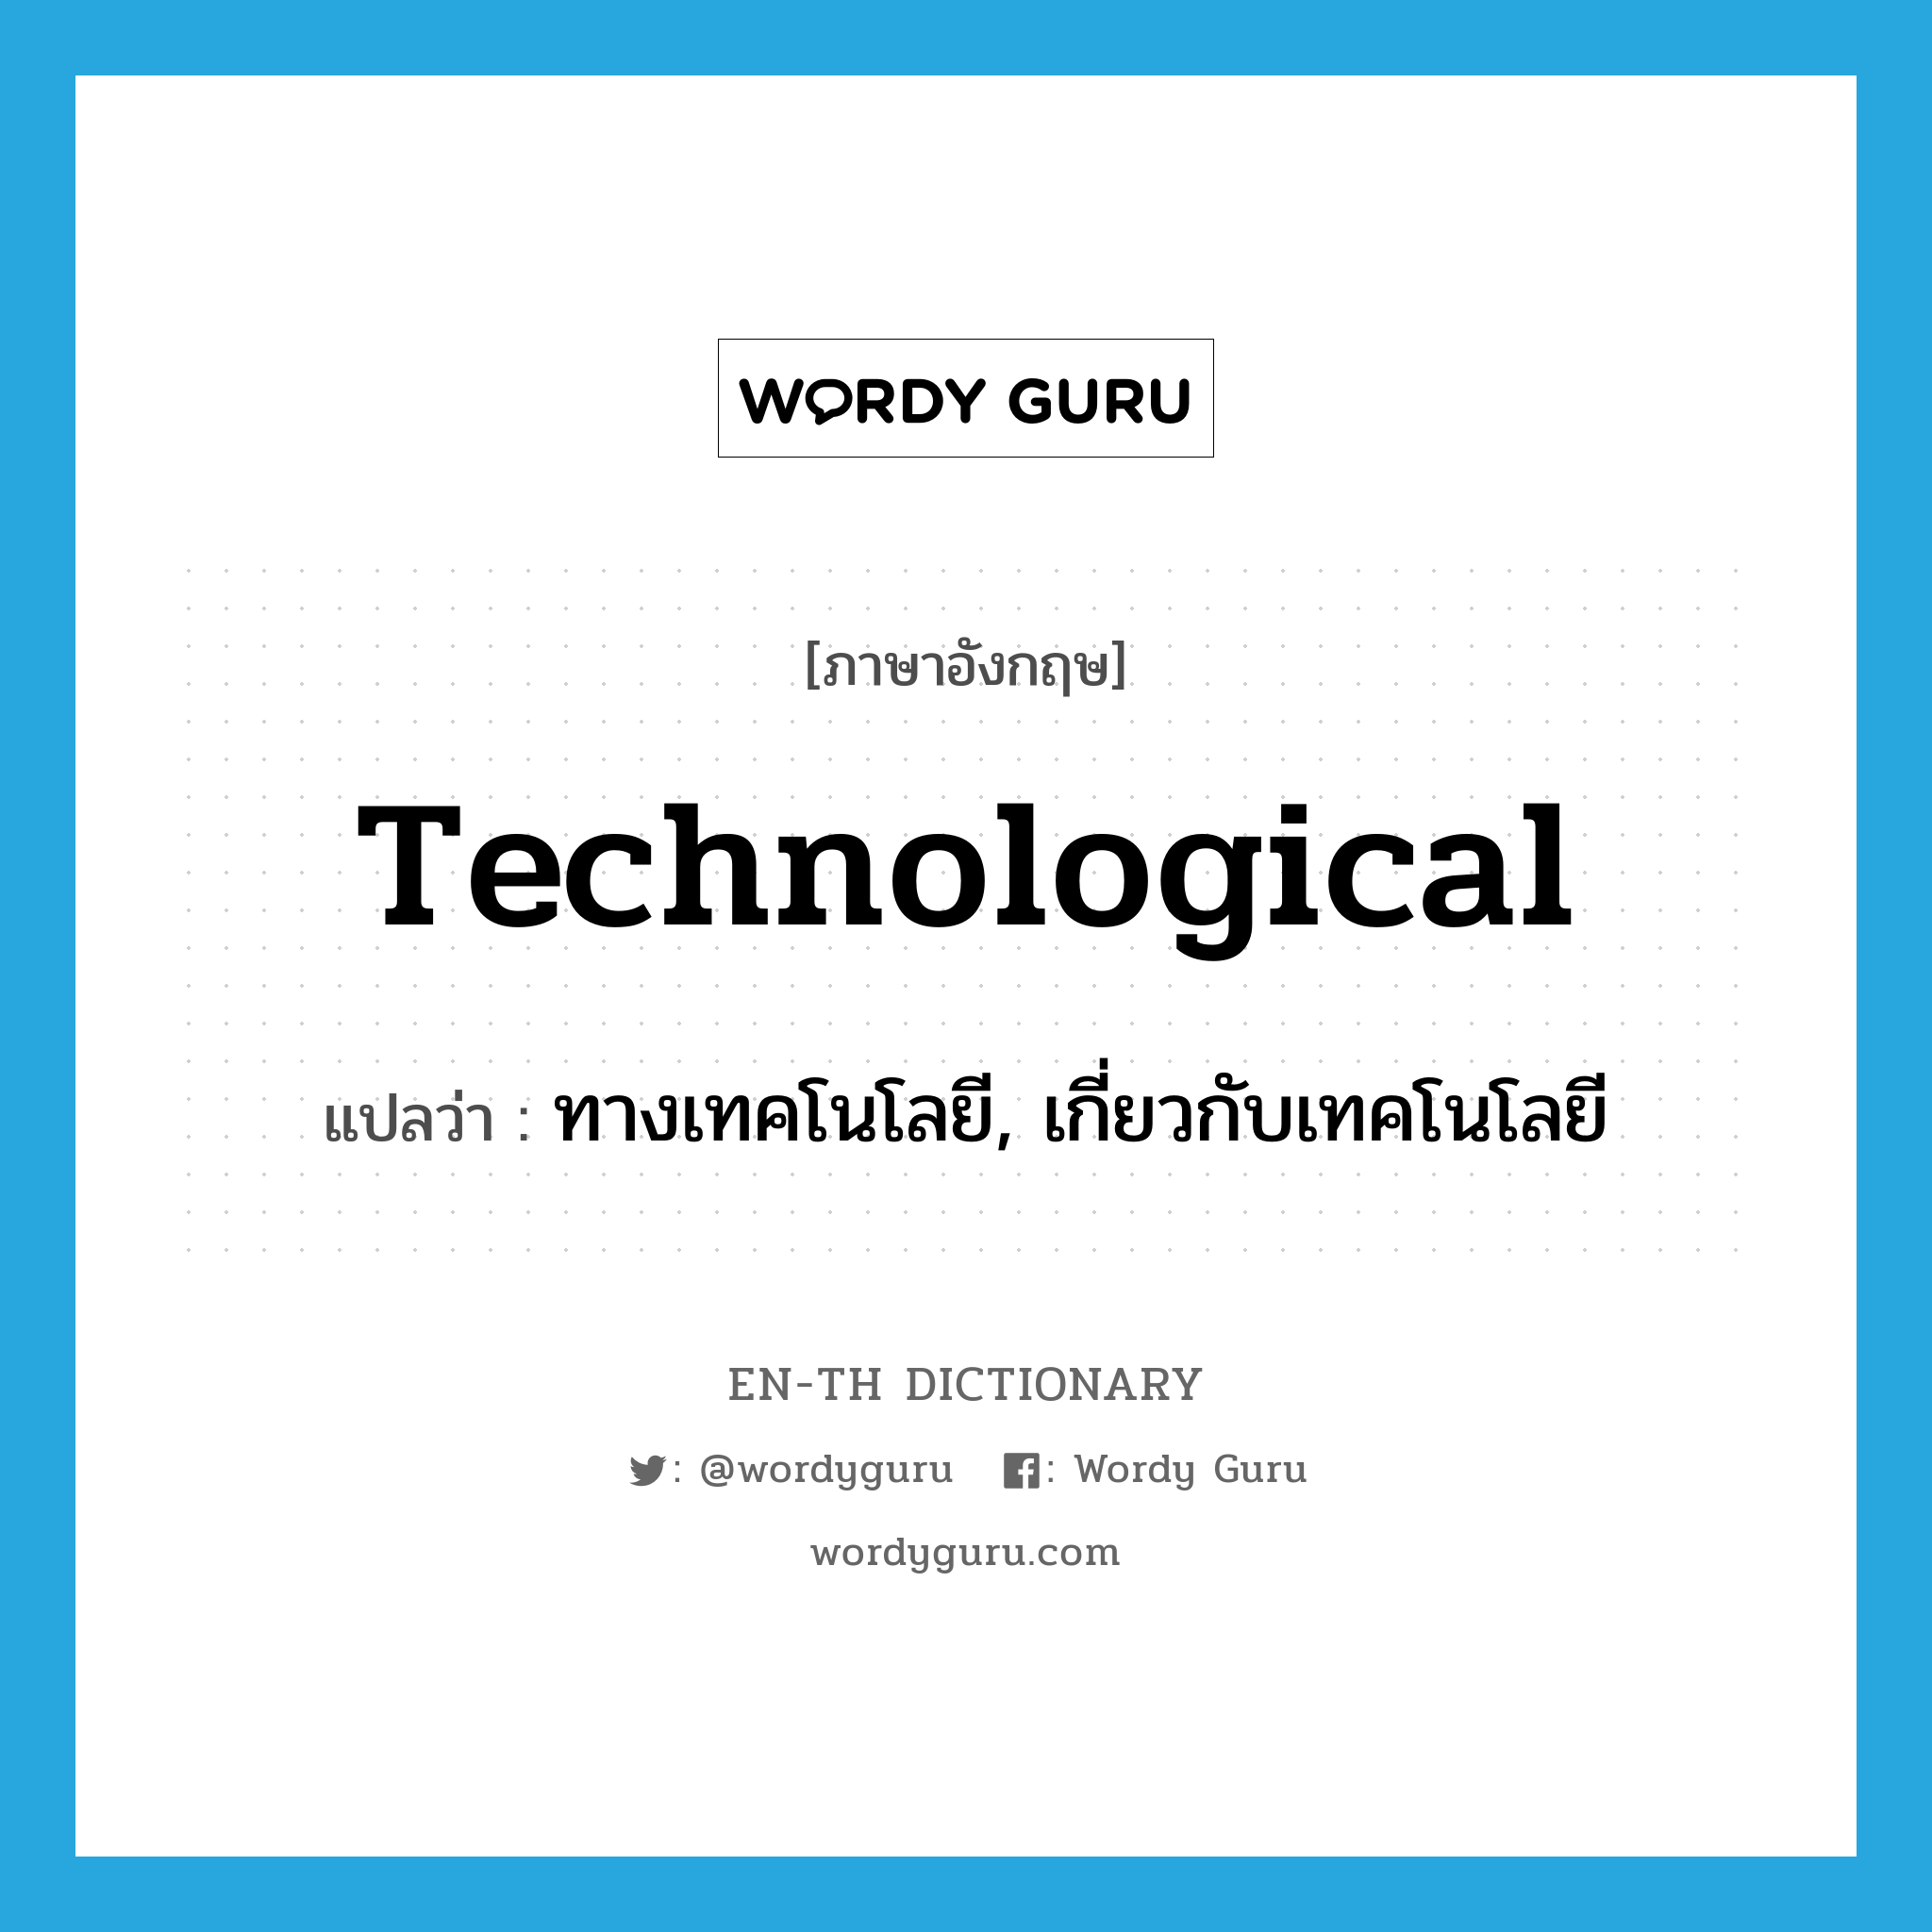 ทางเทคโนโลยี, เกี่ยวกับเทคโนโลยี ภาษาอังกฤษ?, คำศัพท์ภาษาอังกฤษ ทางเทคโนโลยี, เกี่ยวกับเทคโนโลยี แปลว่า technological ประเภท ADJ หมวด ADJ